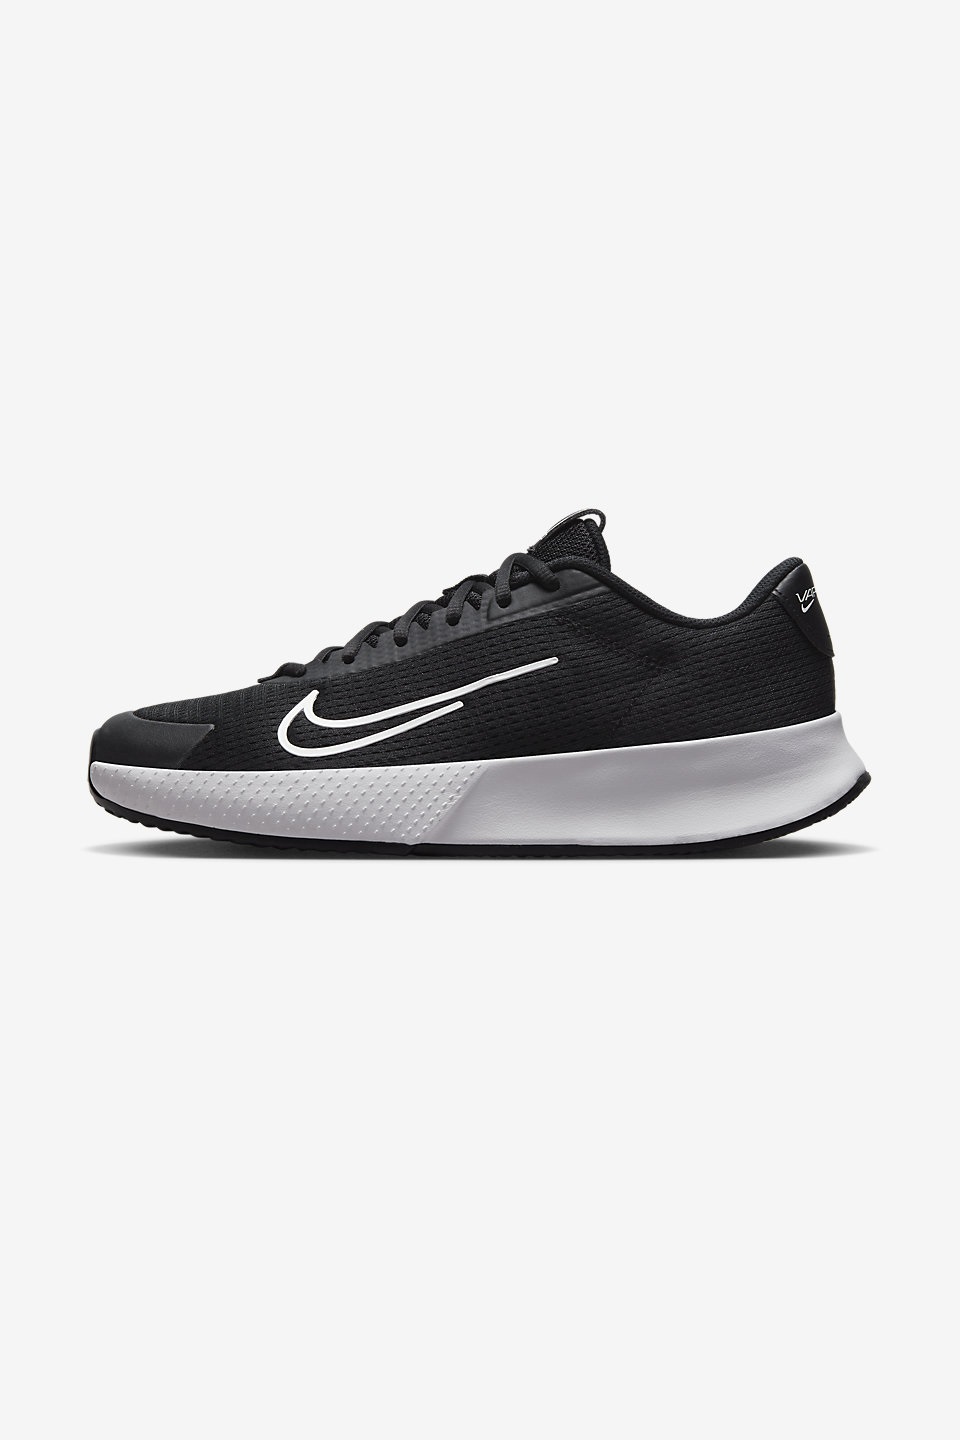 NikeCourt Vapor Lite 2 Erkek Toprak Kort Tenis Ayakkabısı